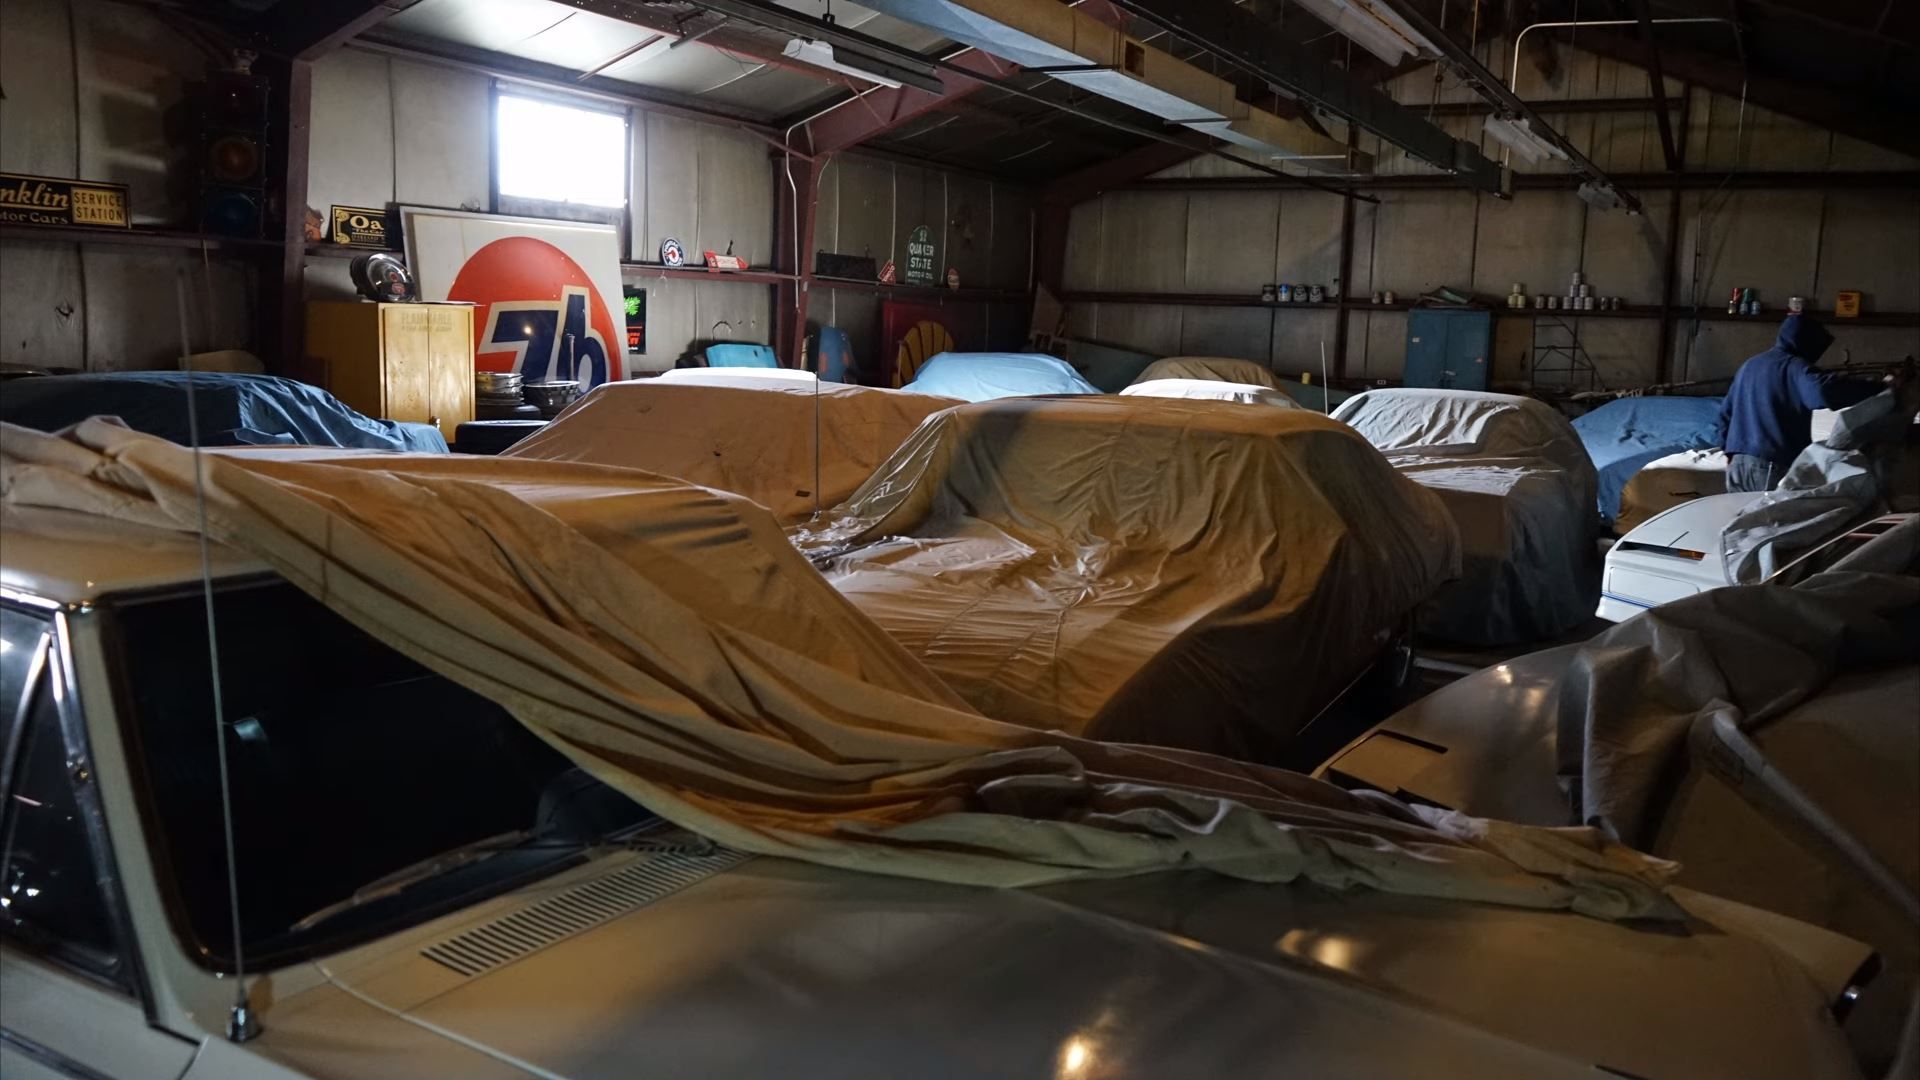 Un archéologue automobile découvre de rares muscle cars Pontiac préservées dans un ancien entrepôt